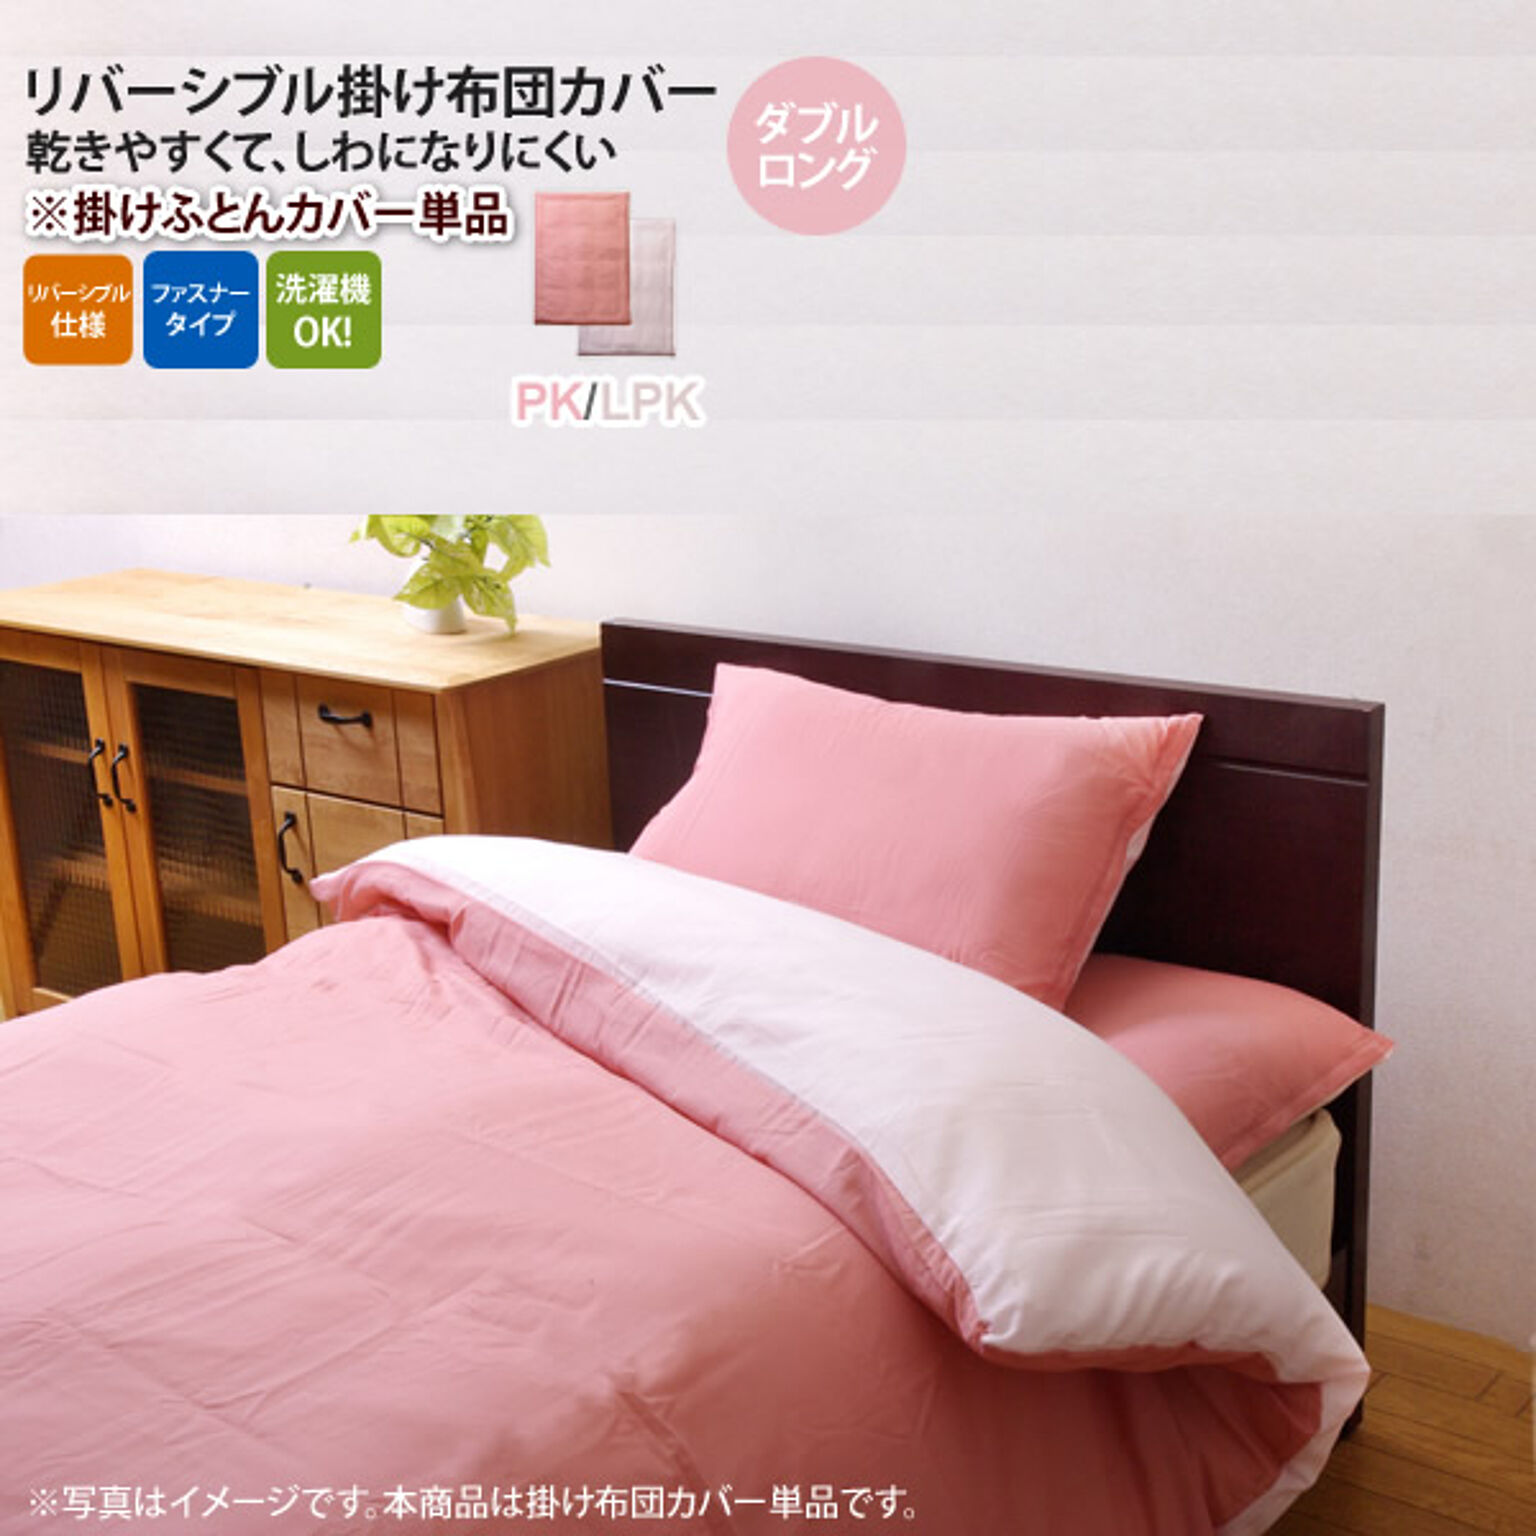 ピンク(pink) ダブルロング 190×210cm： 掛け布団カバー 寝具 無地